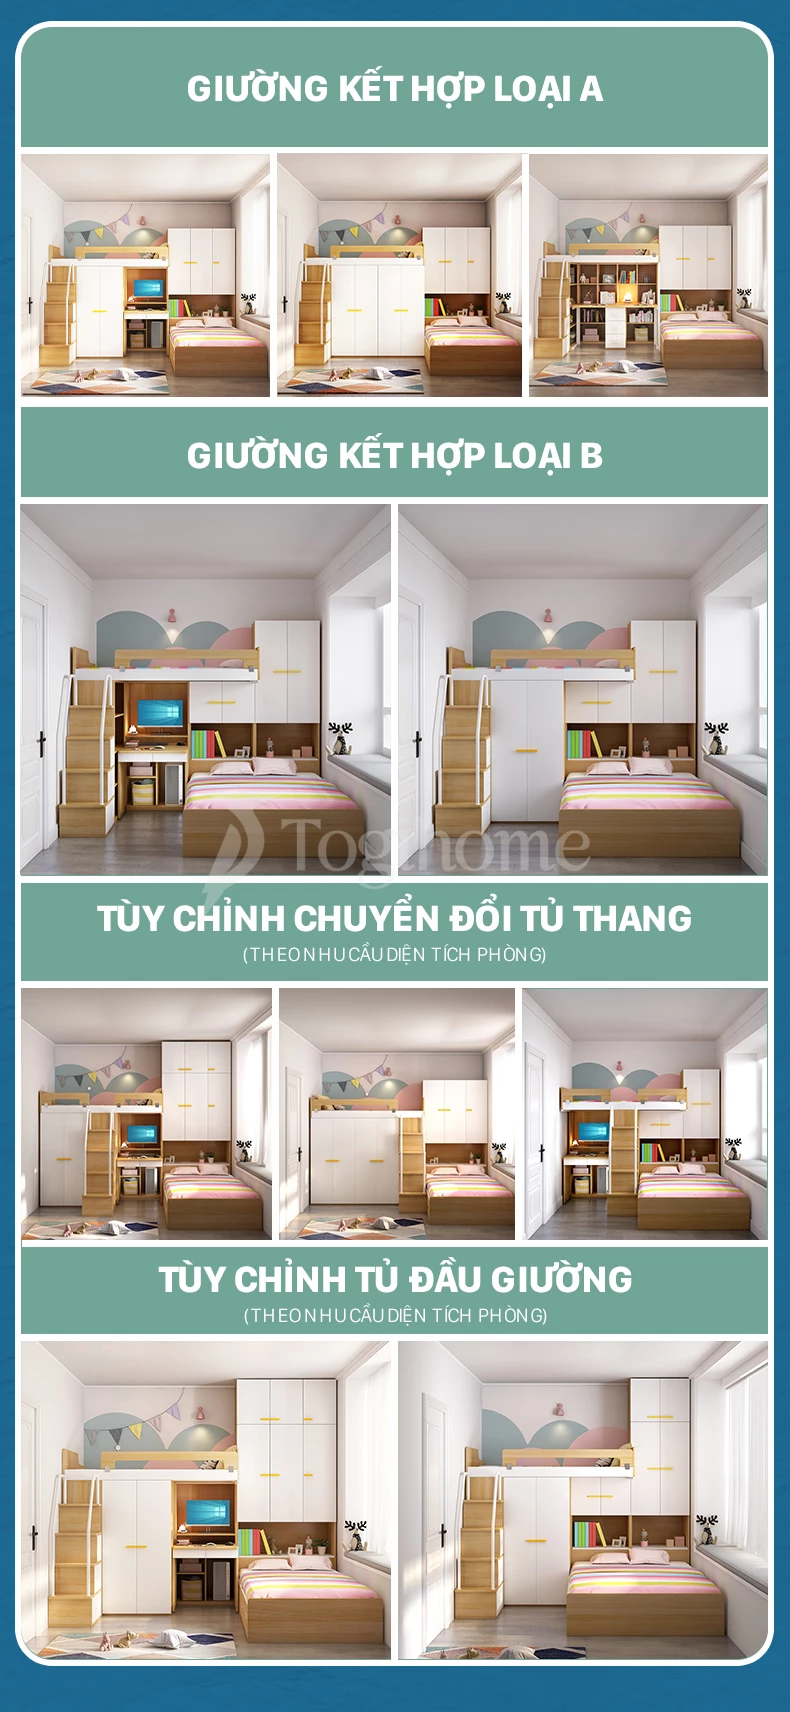 Combo nội thất giường ngủ trẻ em GTE07 kết hợp tủ đồ, tủ thang và bàn làm việc từ chất liệu gỗ MDF cao cấp với 1 số mẫu thiết kế tùy chỉnh khác nhau